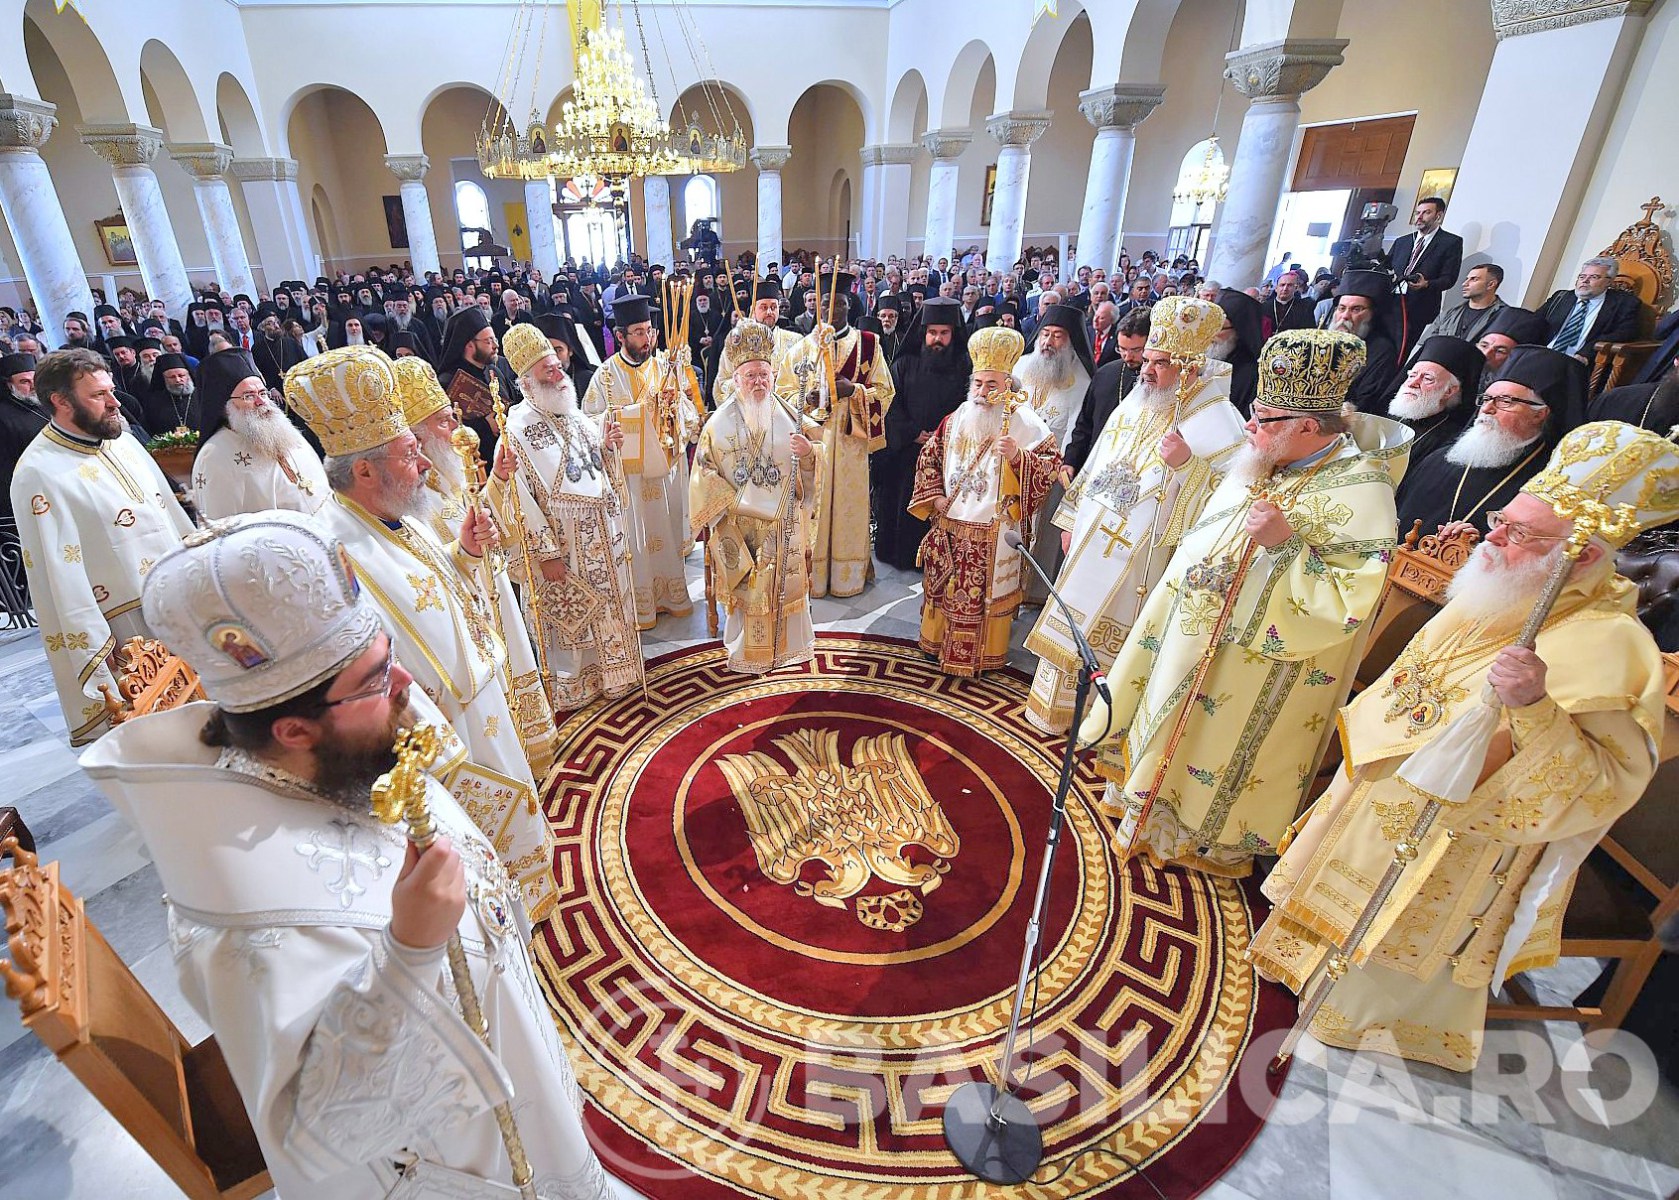 « Toute clarification concernant la foi doit être faite dans la communion ecclésiale, non dans la désunion » a déclaré le Saint-Synode du Patriarcat de Roumanie au sujet du Concile de Crète